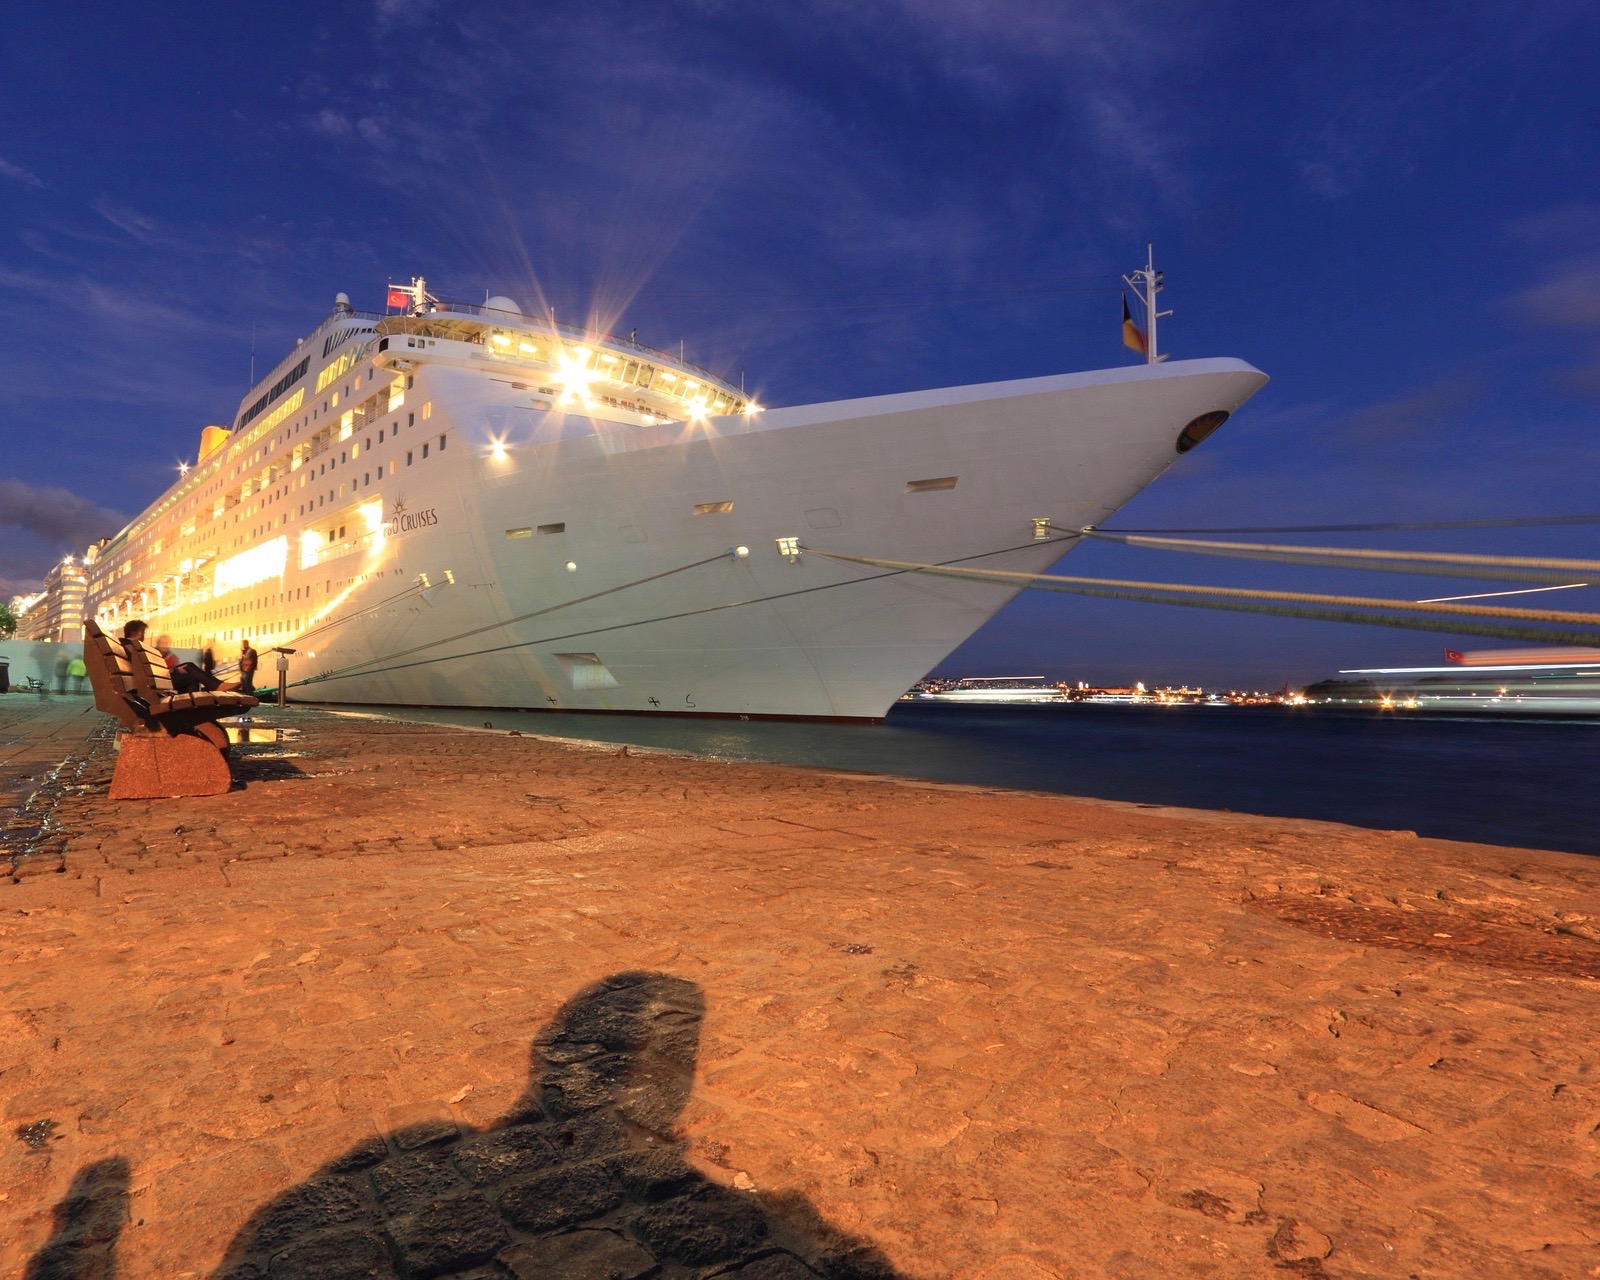 Attenzione a sicurezza, ambiente e gestione delle destinazioni: le tendenze del settore crociere nel Cruise Industry 2022 Outlook Report di CLIA